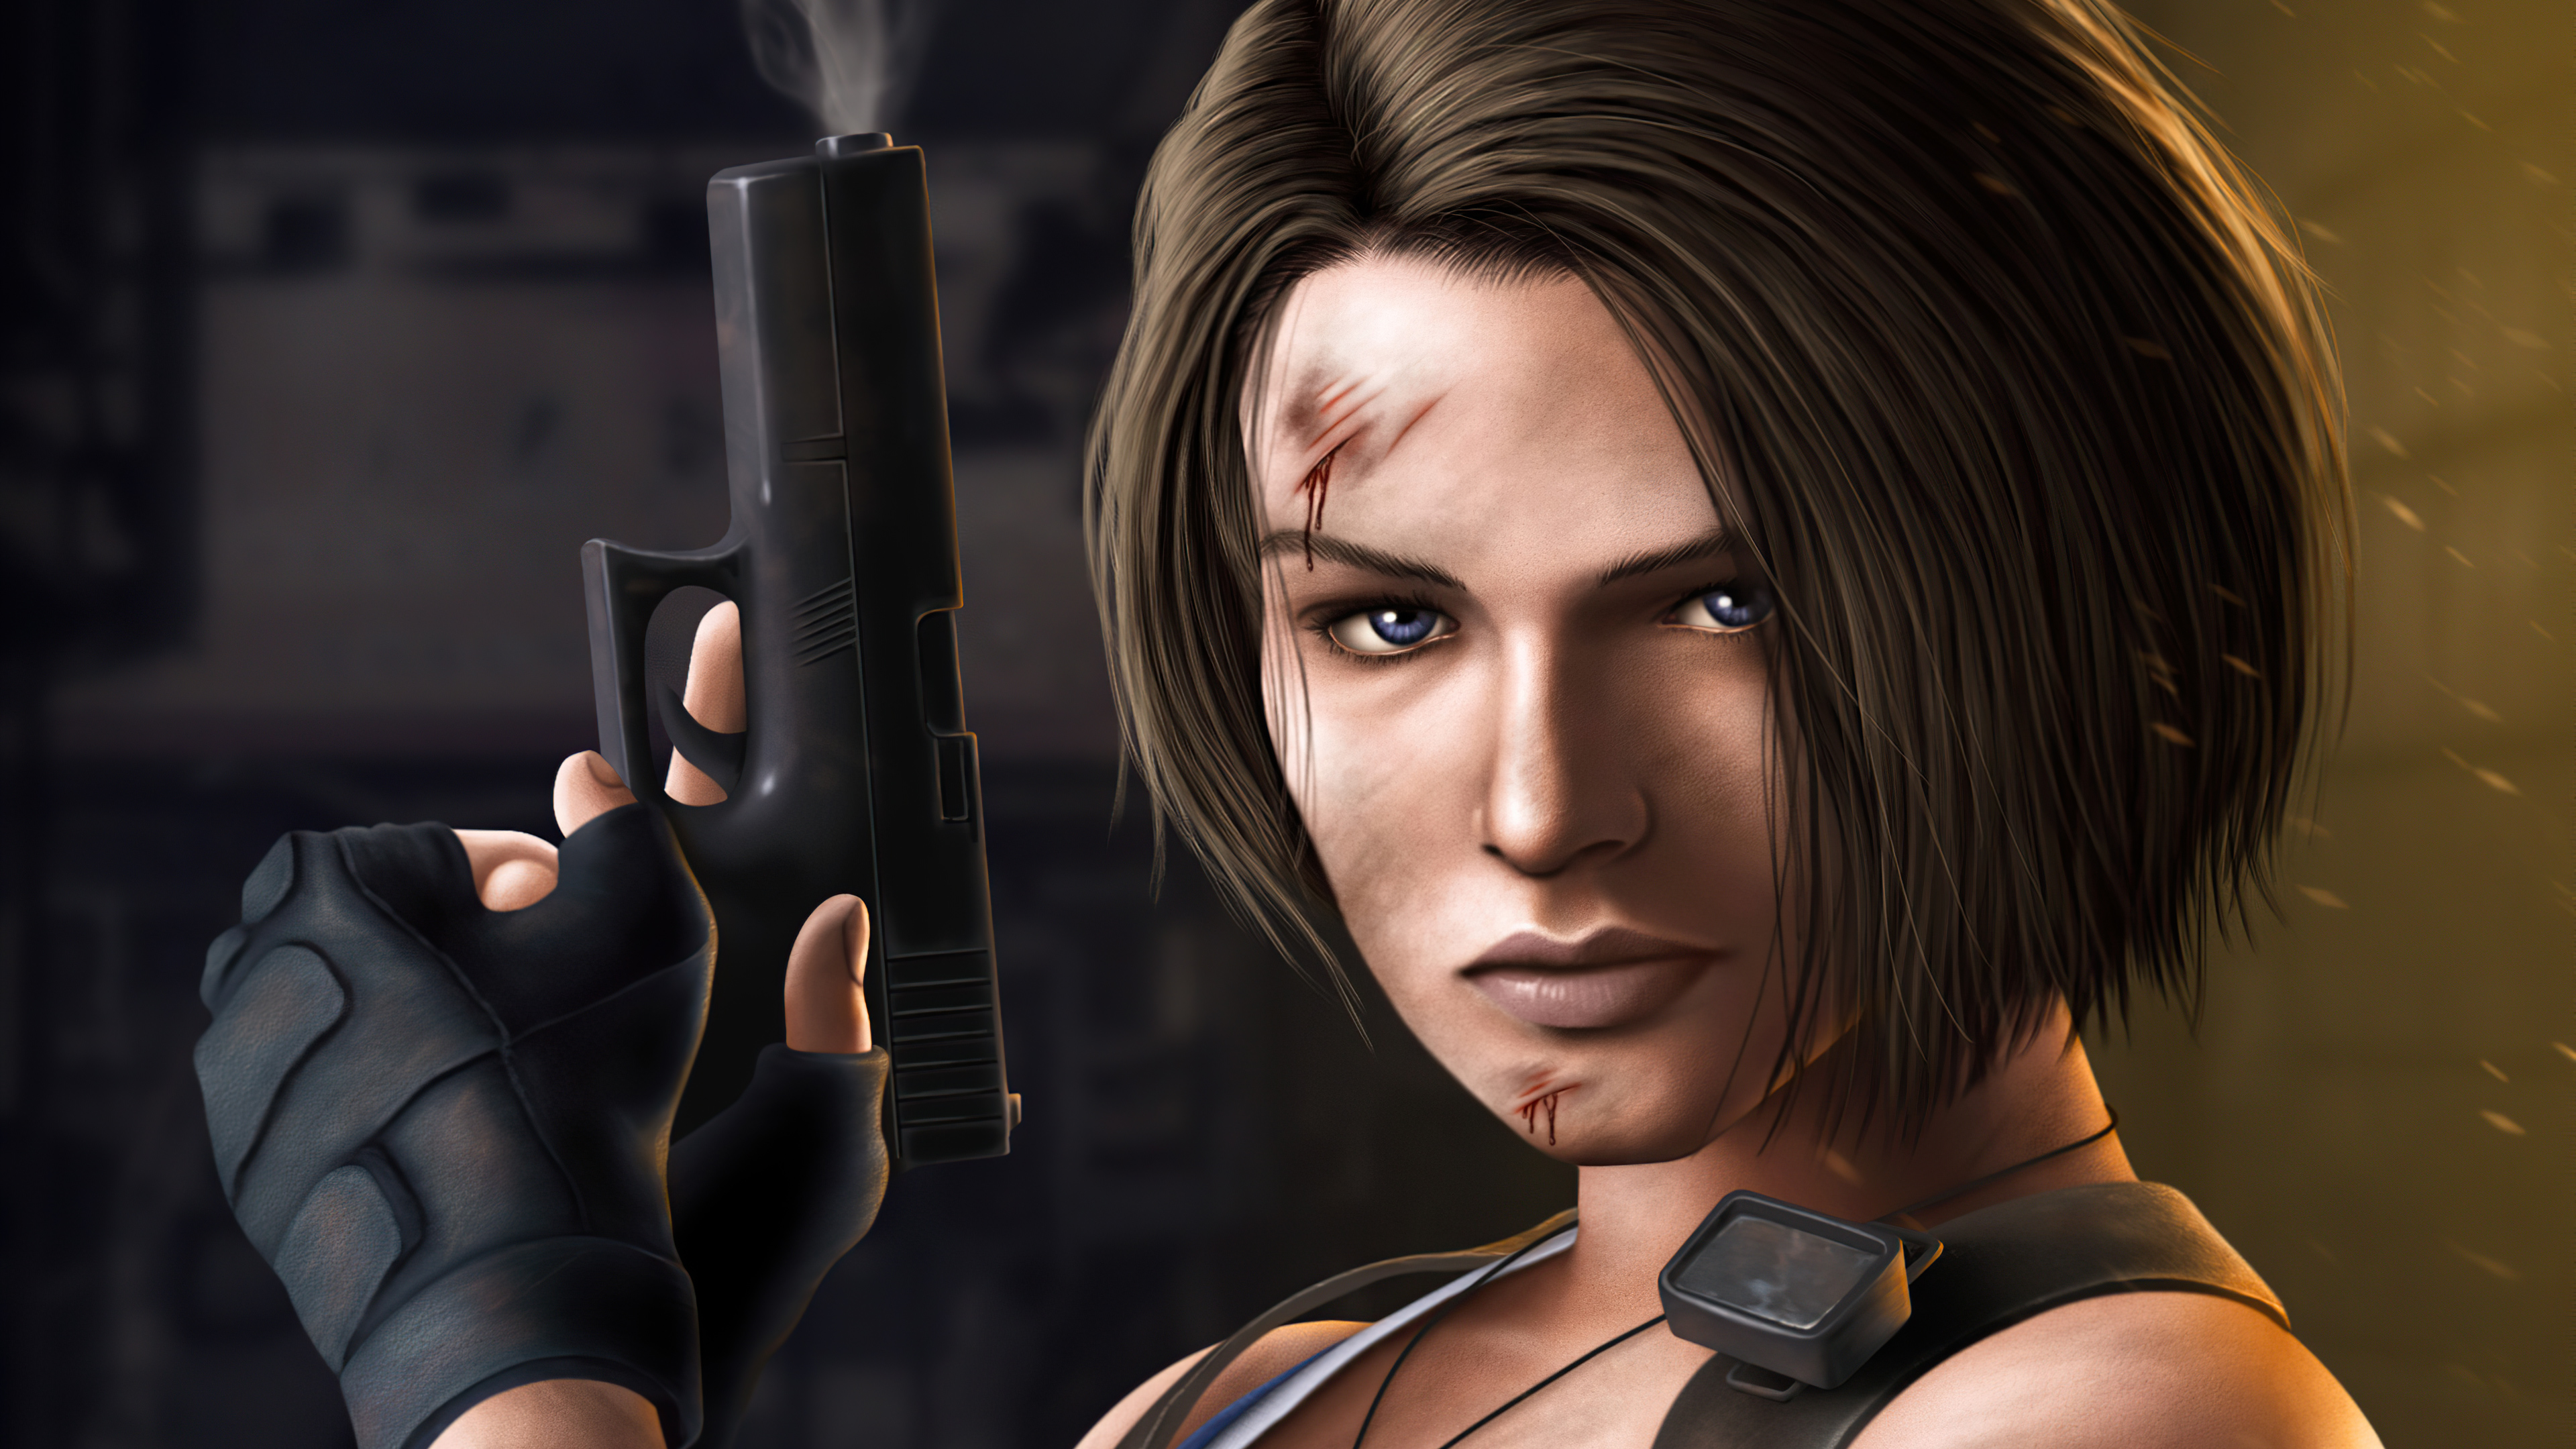 Jill Valentine Resident Evil 3 Wallpaper - Resolution:3840x2160 - ID:125539...